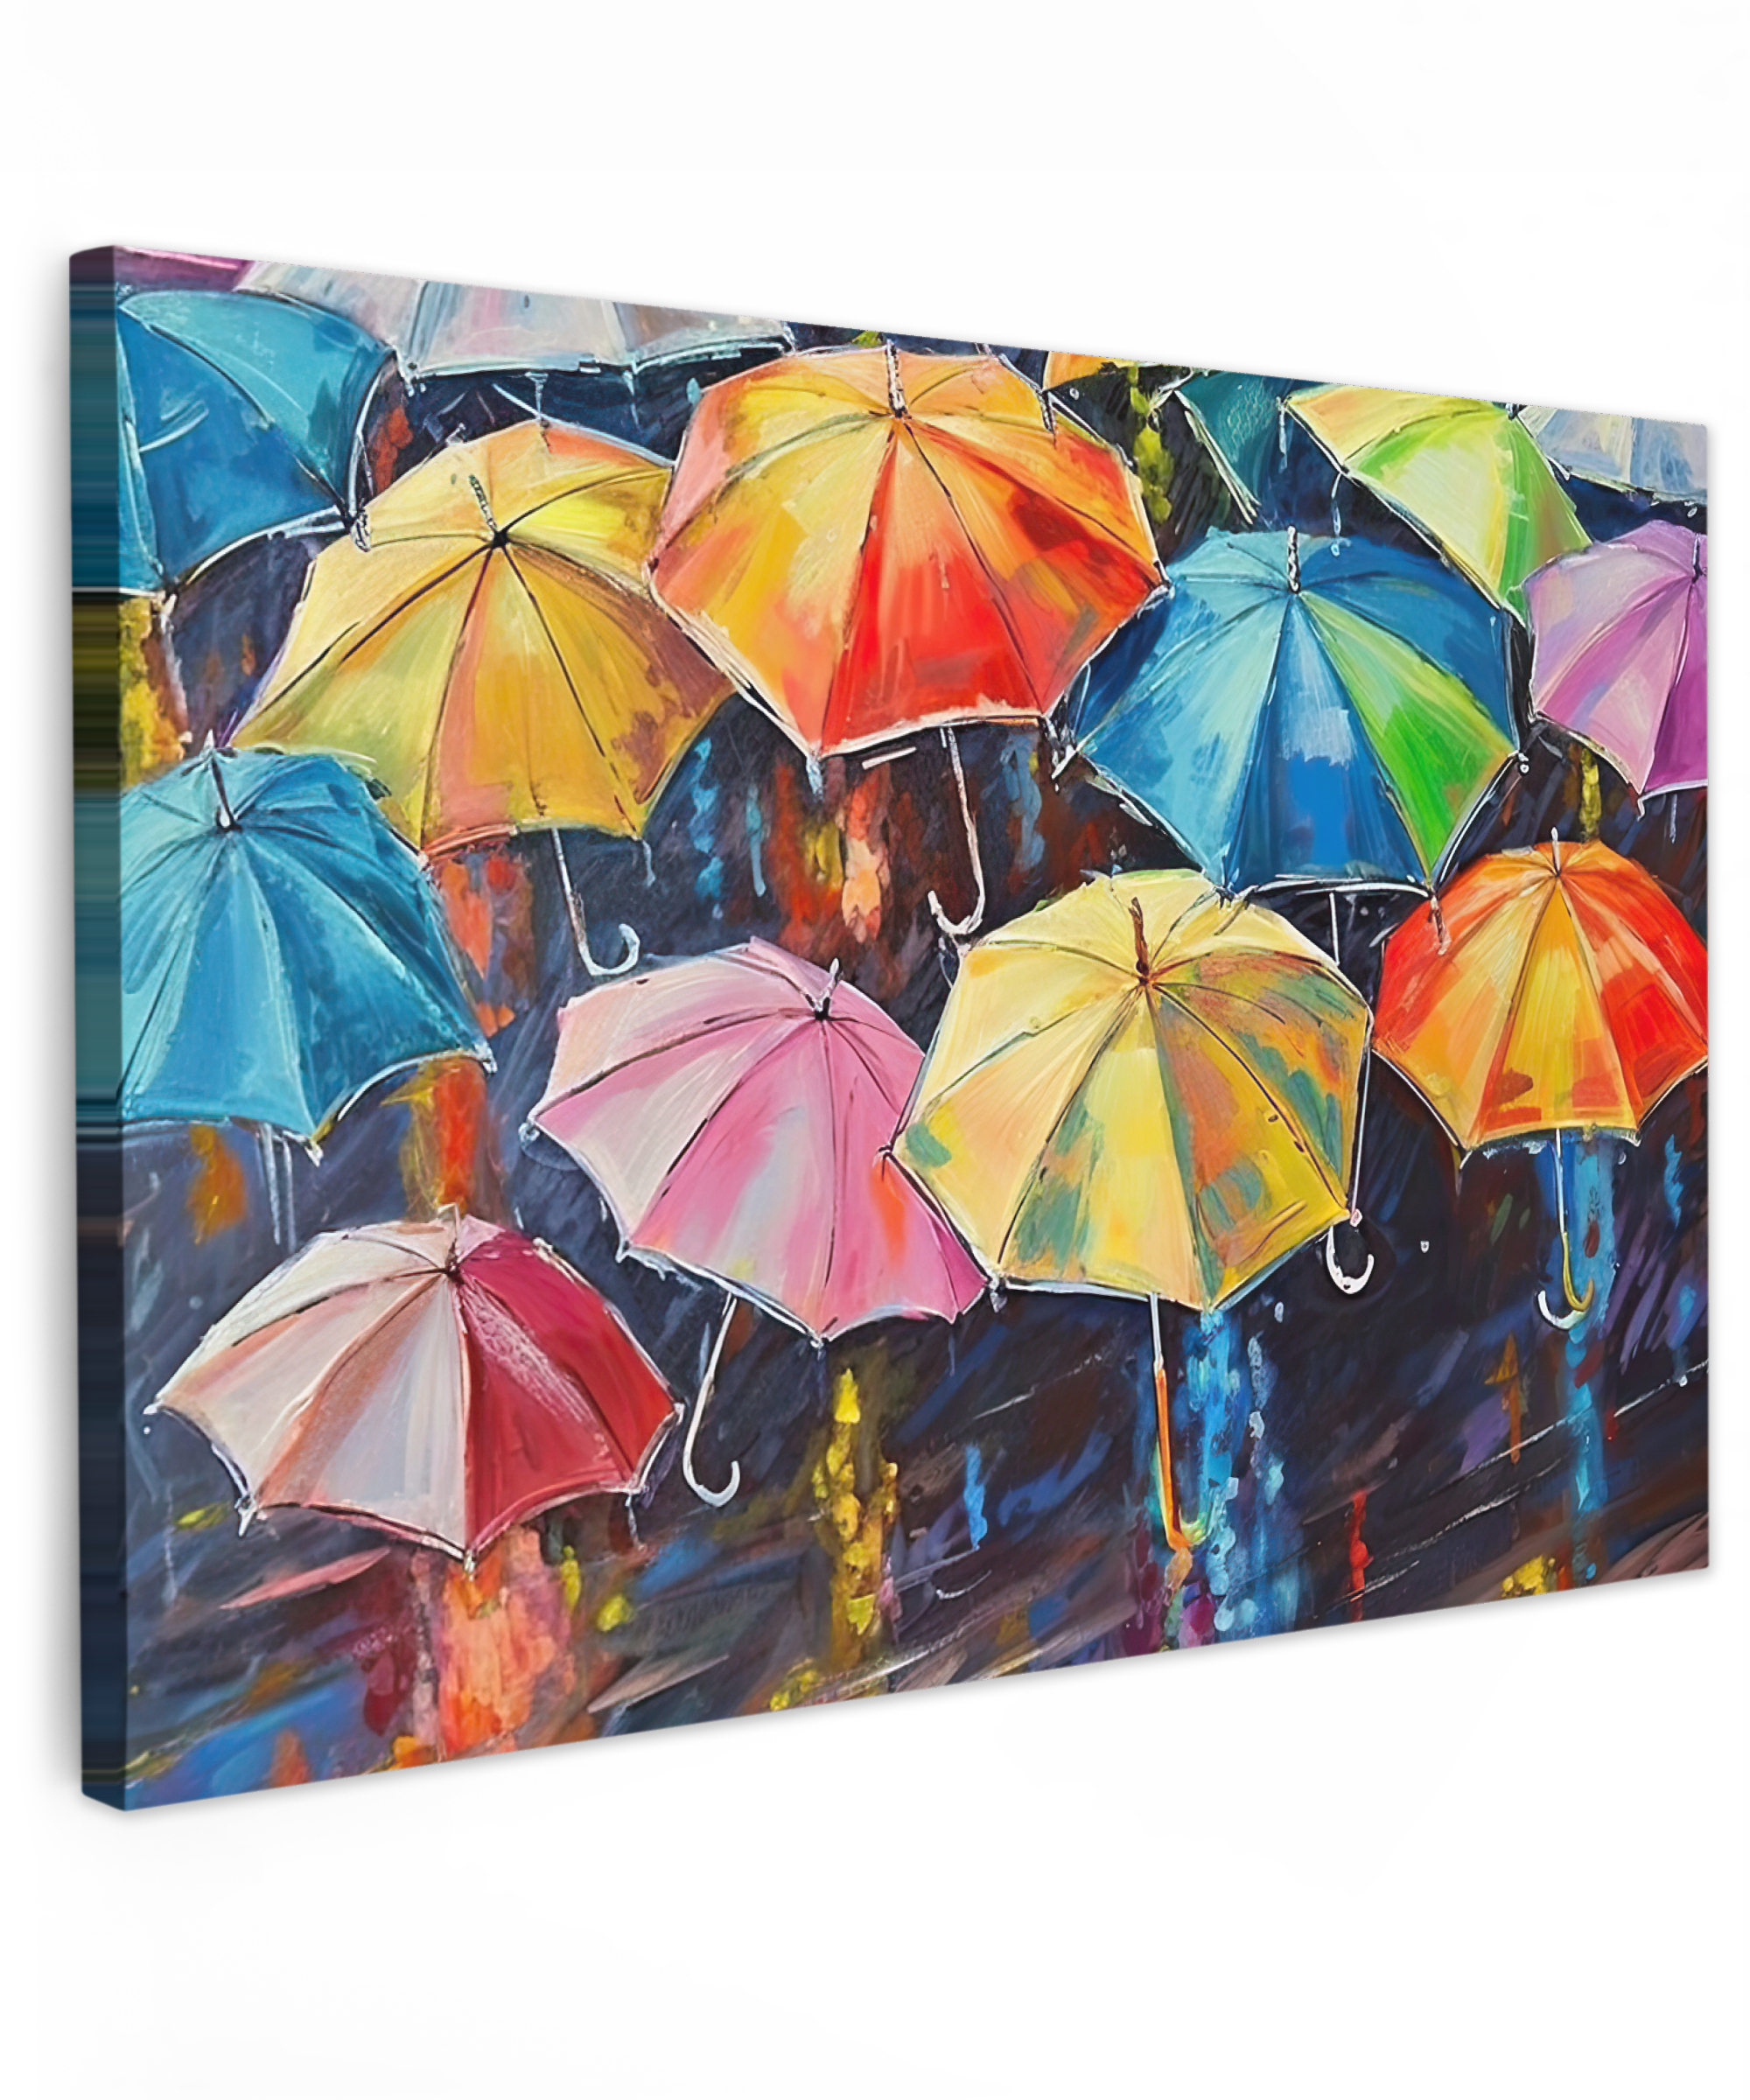 Canvas schilderij - Paraplu's - Schilderij - Kunst - Regenboog